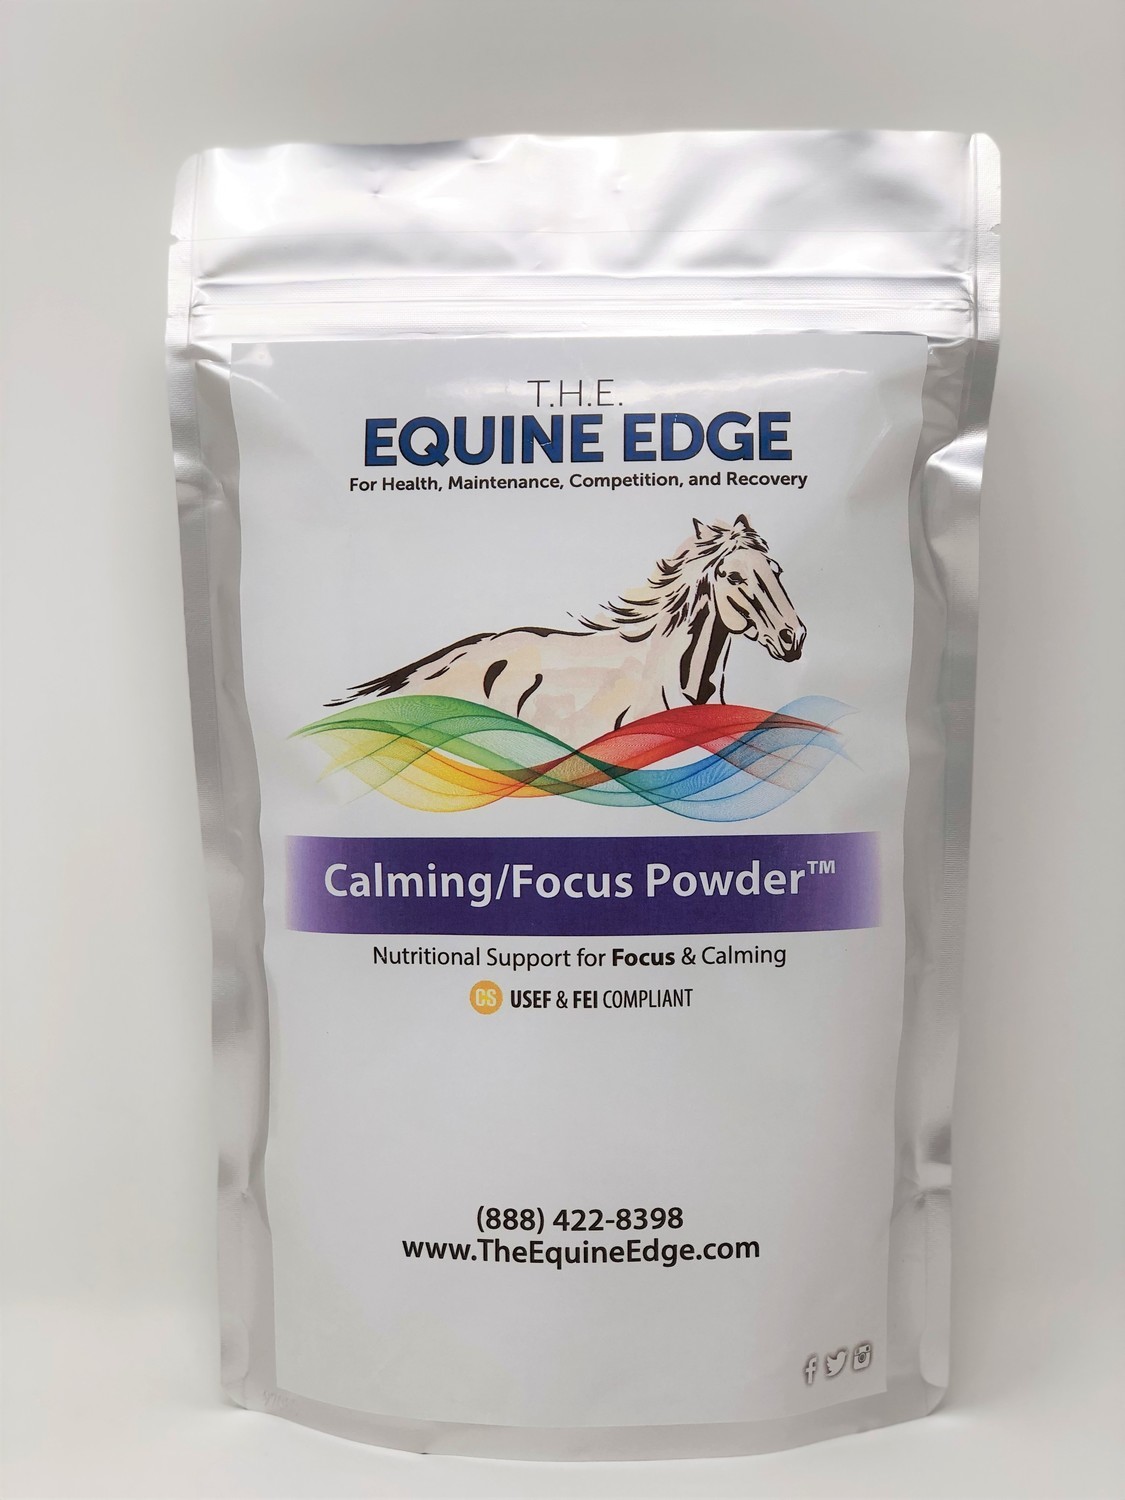 Calming/Focus Powder™